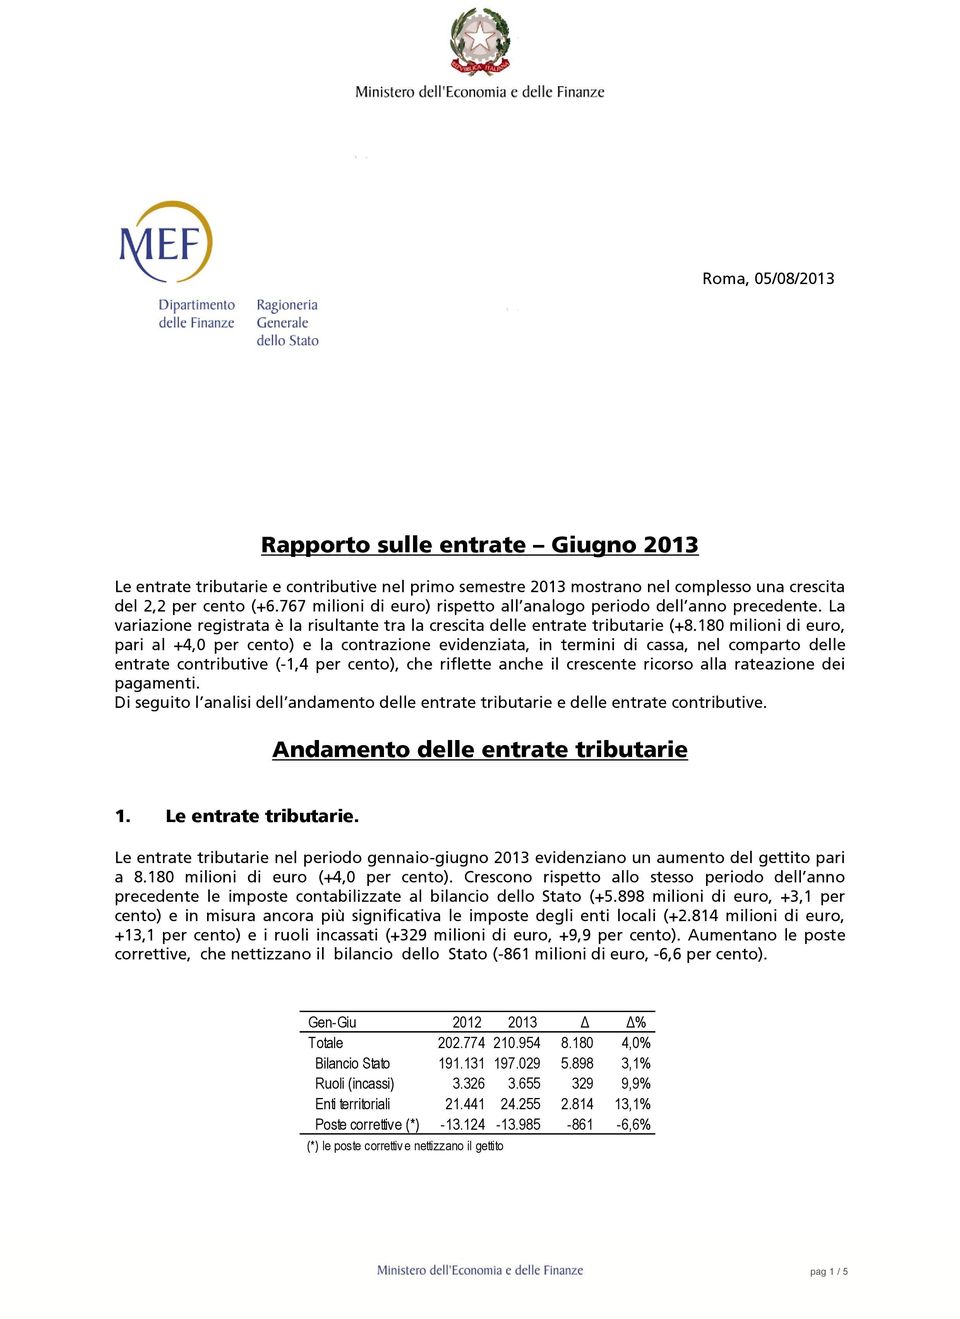 180 milioni di euro, pari al +4,0 per cento) e la contrazione evidenziata, in termini di cassa, nel comparto delle entrate contributive (-1,4 per cento), che riflette anche il crescente ricorso alla